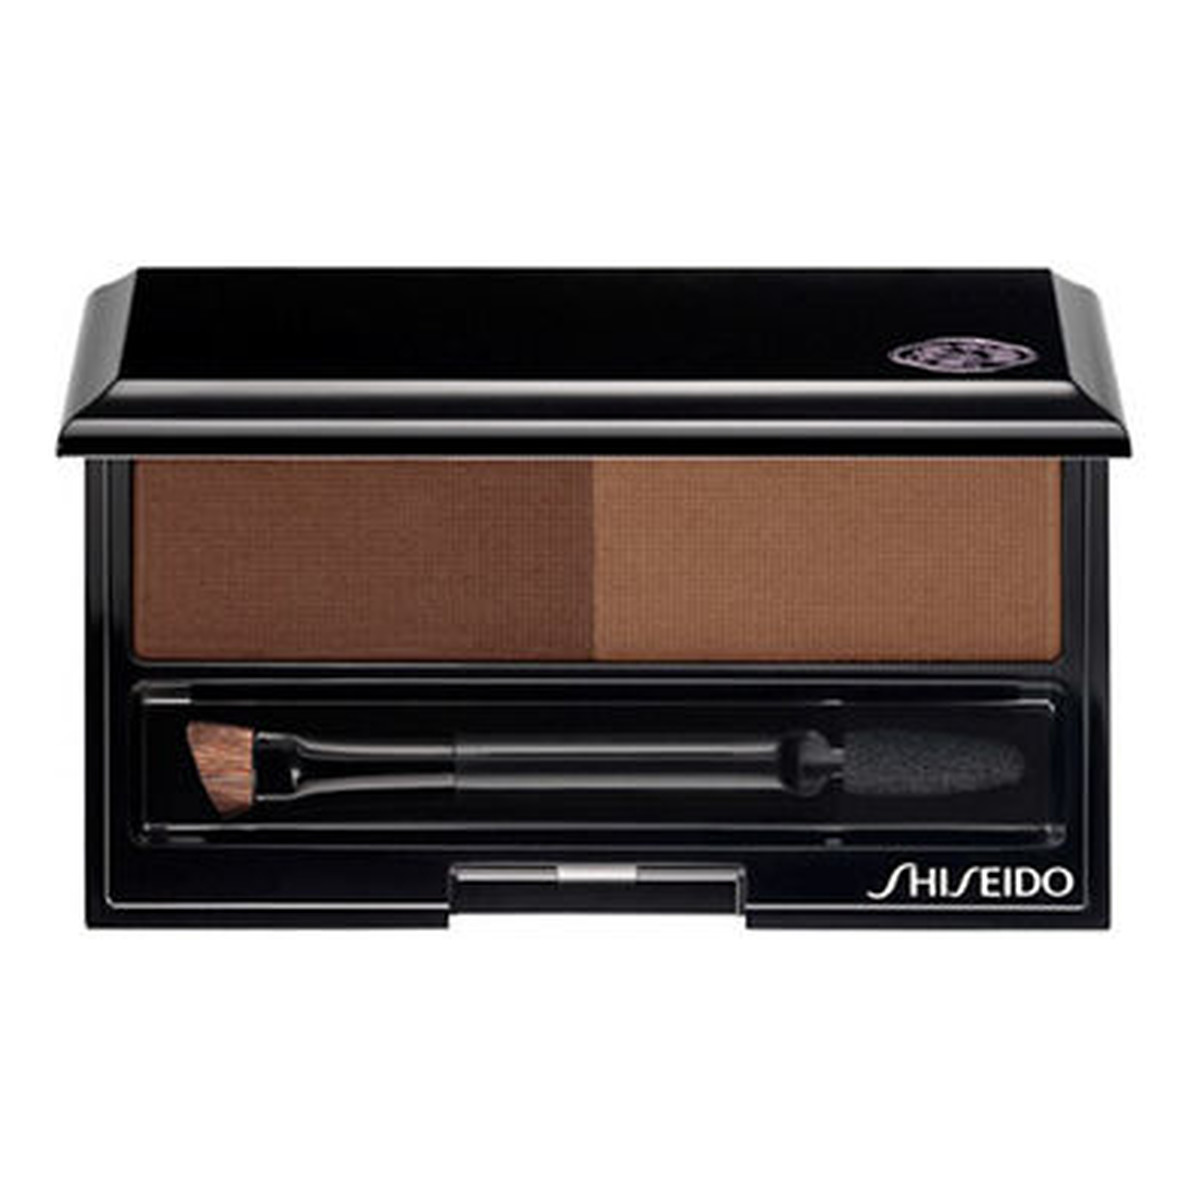 Shiseido Eyebrow Styling Compact zestaw do stylizacji brwi 4g